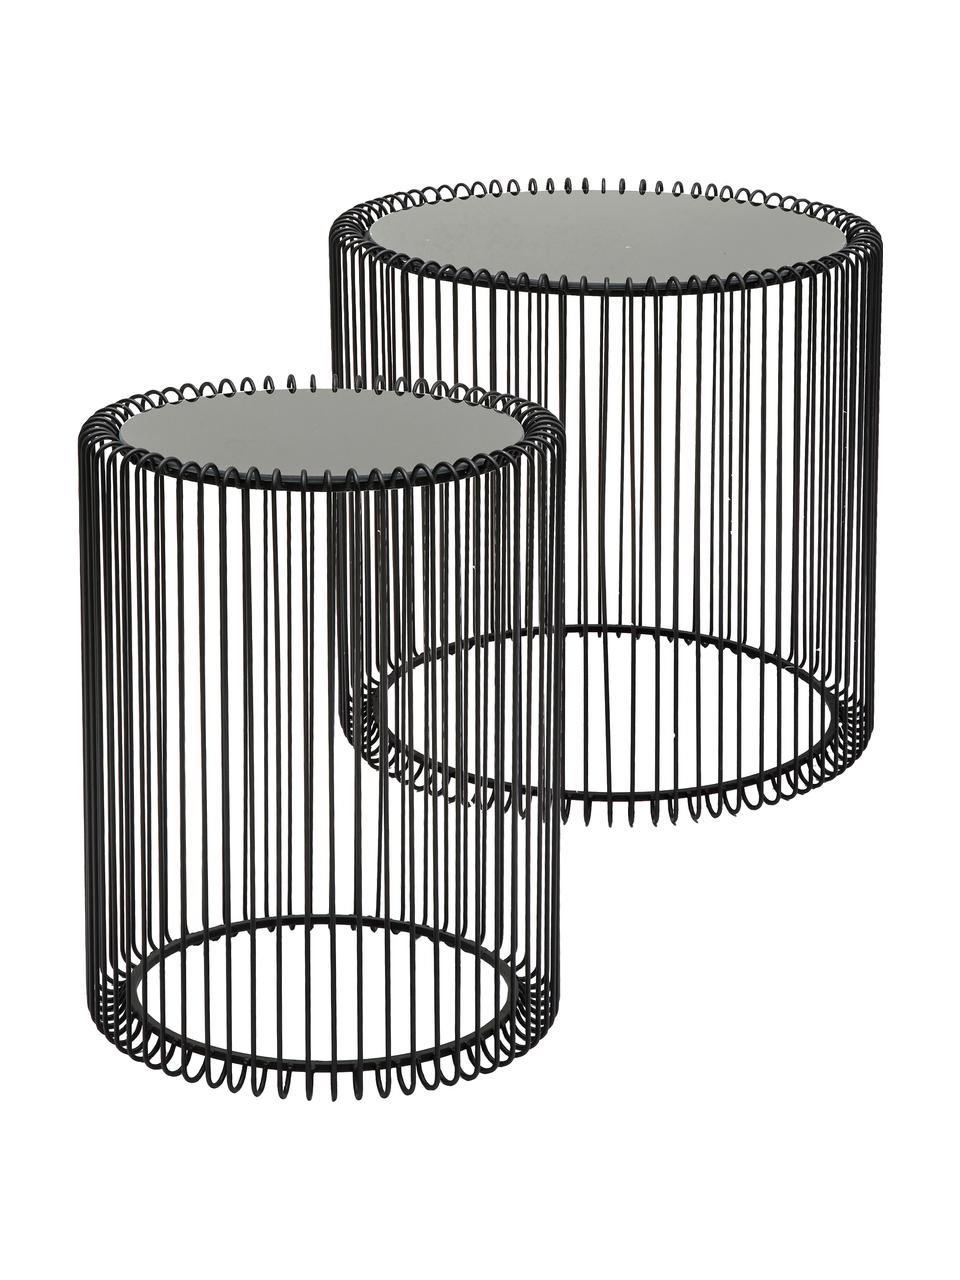 Metall-Beistelltisch 2er-Set Wire mit Glasplatte, Gestell: Metall, pulverbeschichtet, Tischplatte: Sicherheitsglas, foliert, Schwarz, Set mit verschiedenen Größen